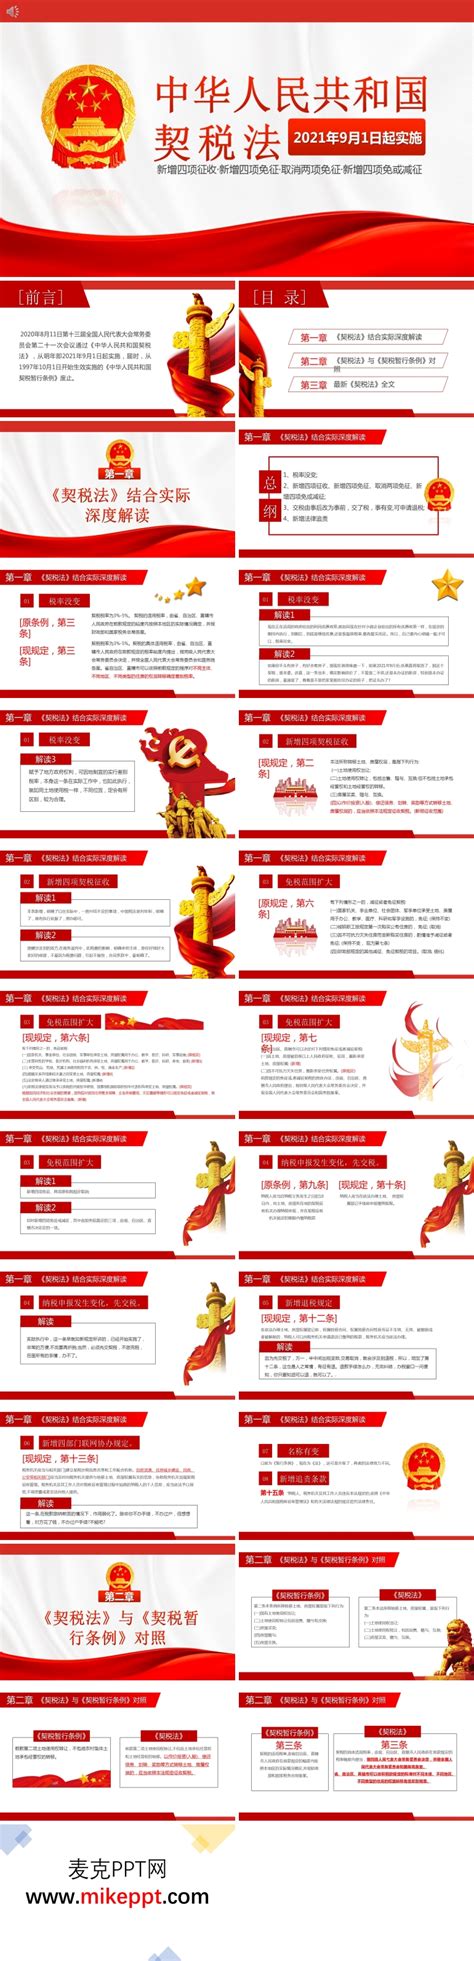 学习解读中华人民共和国契税法PPT-麦克PPT网